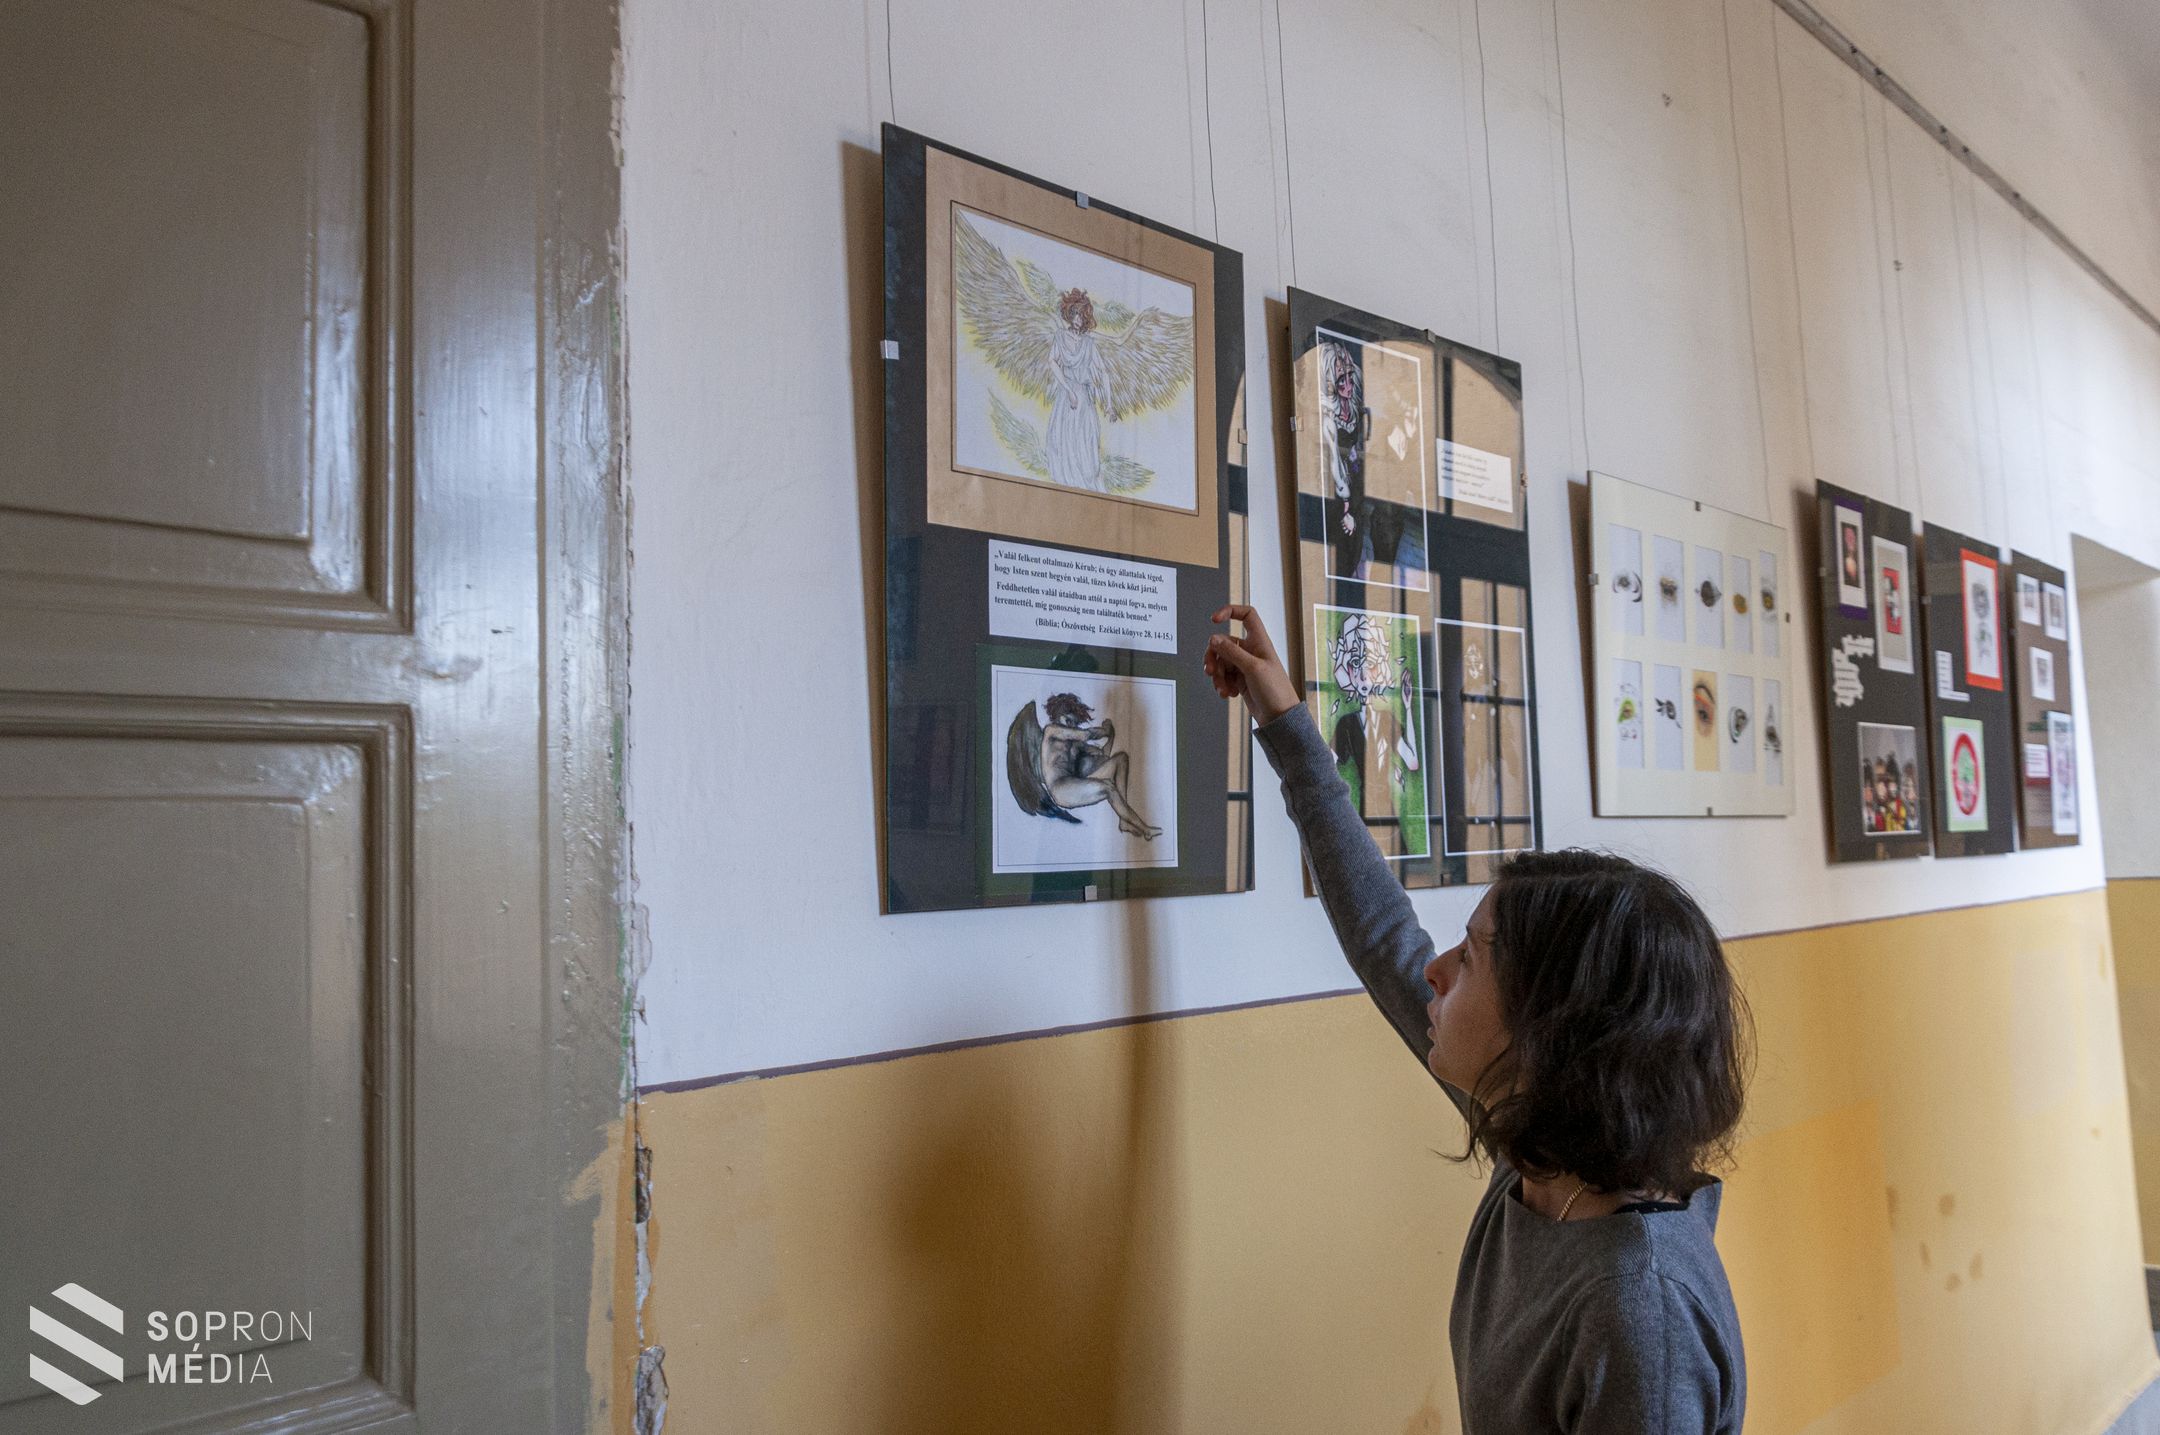 Tehetség, inspiráció és kreativitás: önálló kiállítása nyílt a soproni diáknak  